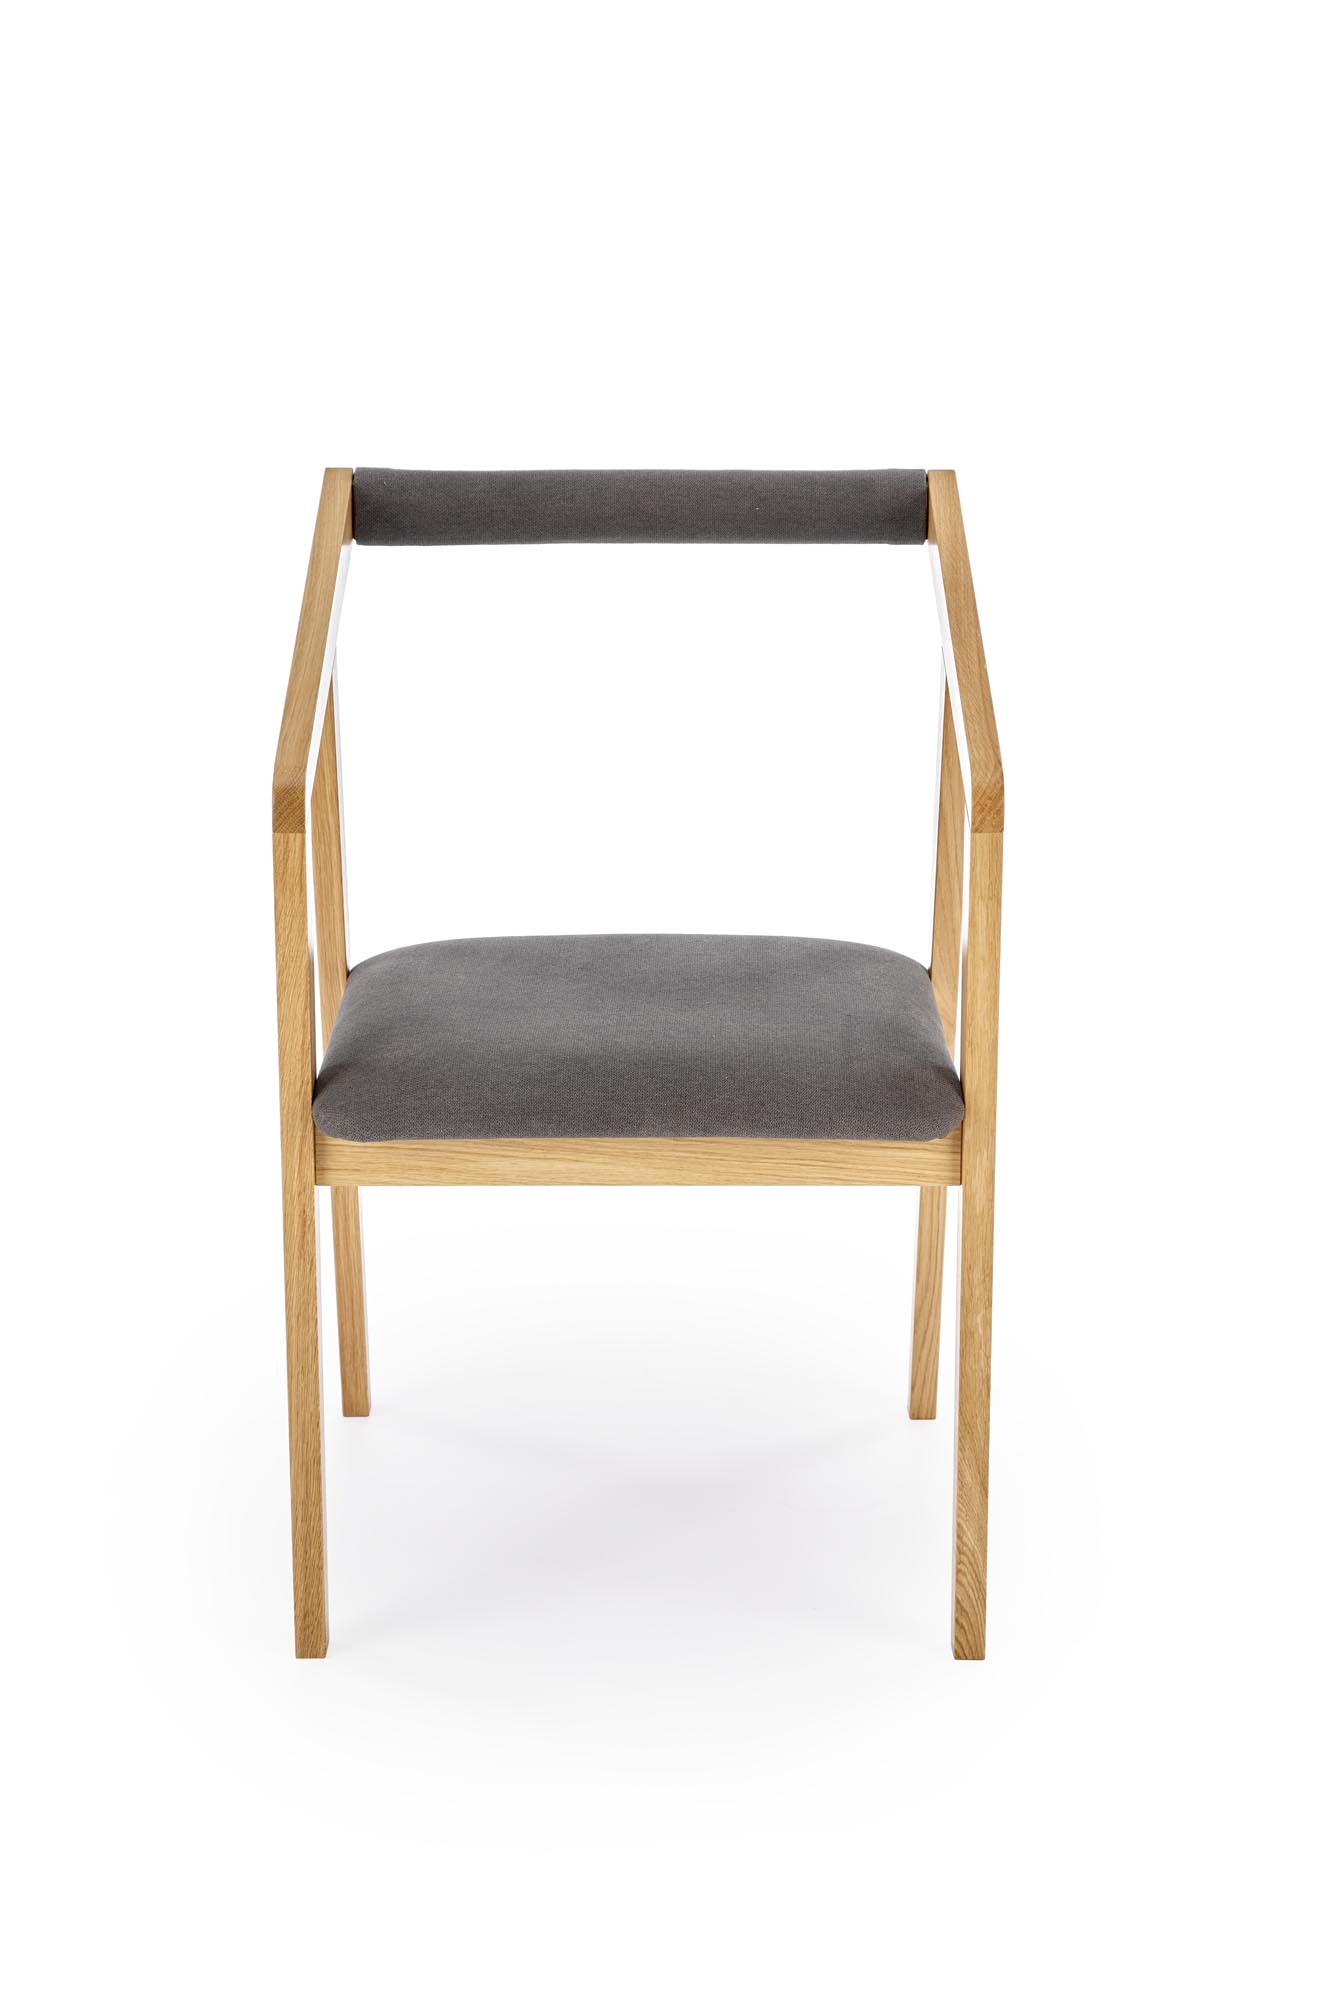 Krzesło z tapicerowanym siedziskeim Azul 2 - dąb naturalny / popiel krzesło z tapicerowanym siedziskeim azul 2 - dąb naturalny / popiel